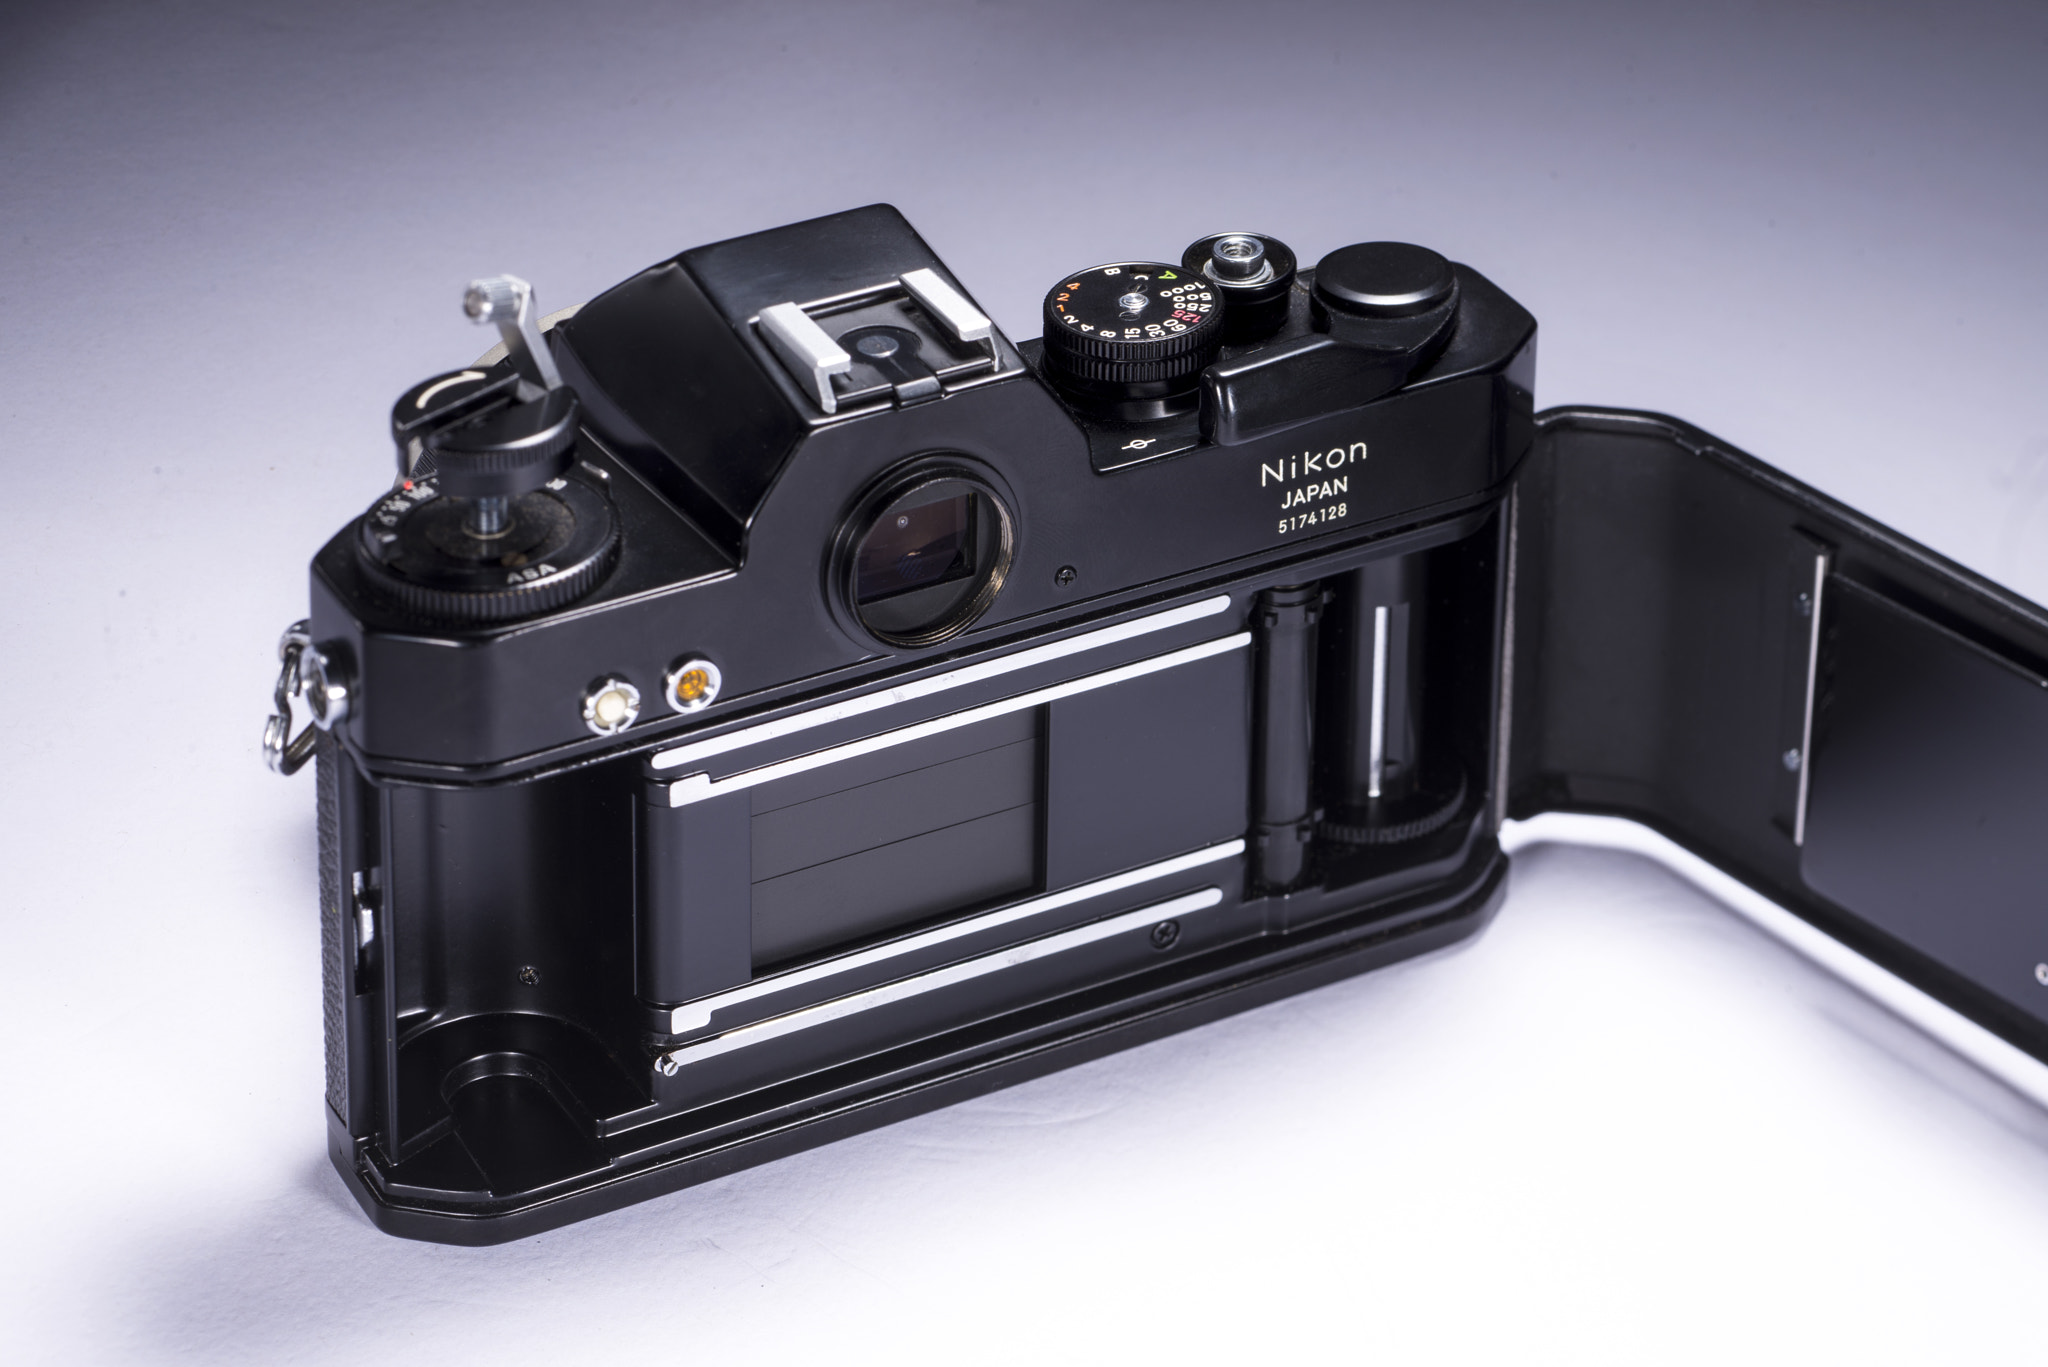 Nikon D800E + PC Micro-Nikkor 85mm f/2.8D sample photo. Nikomat el back photography